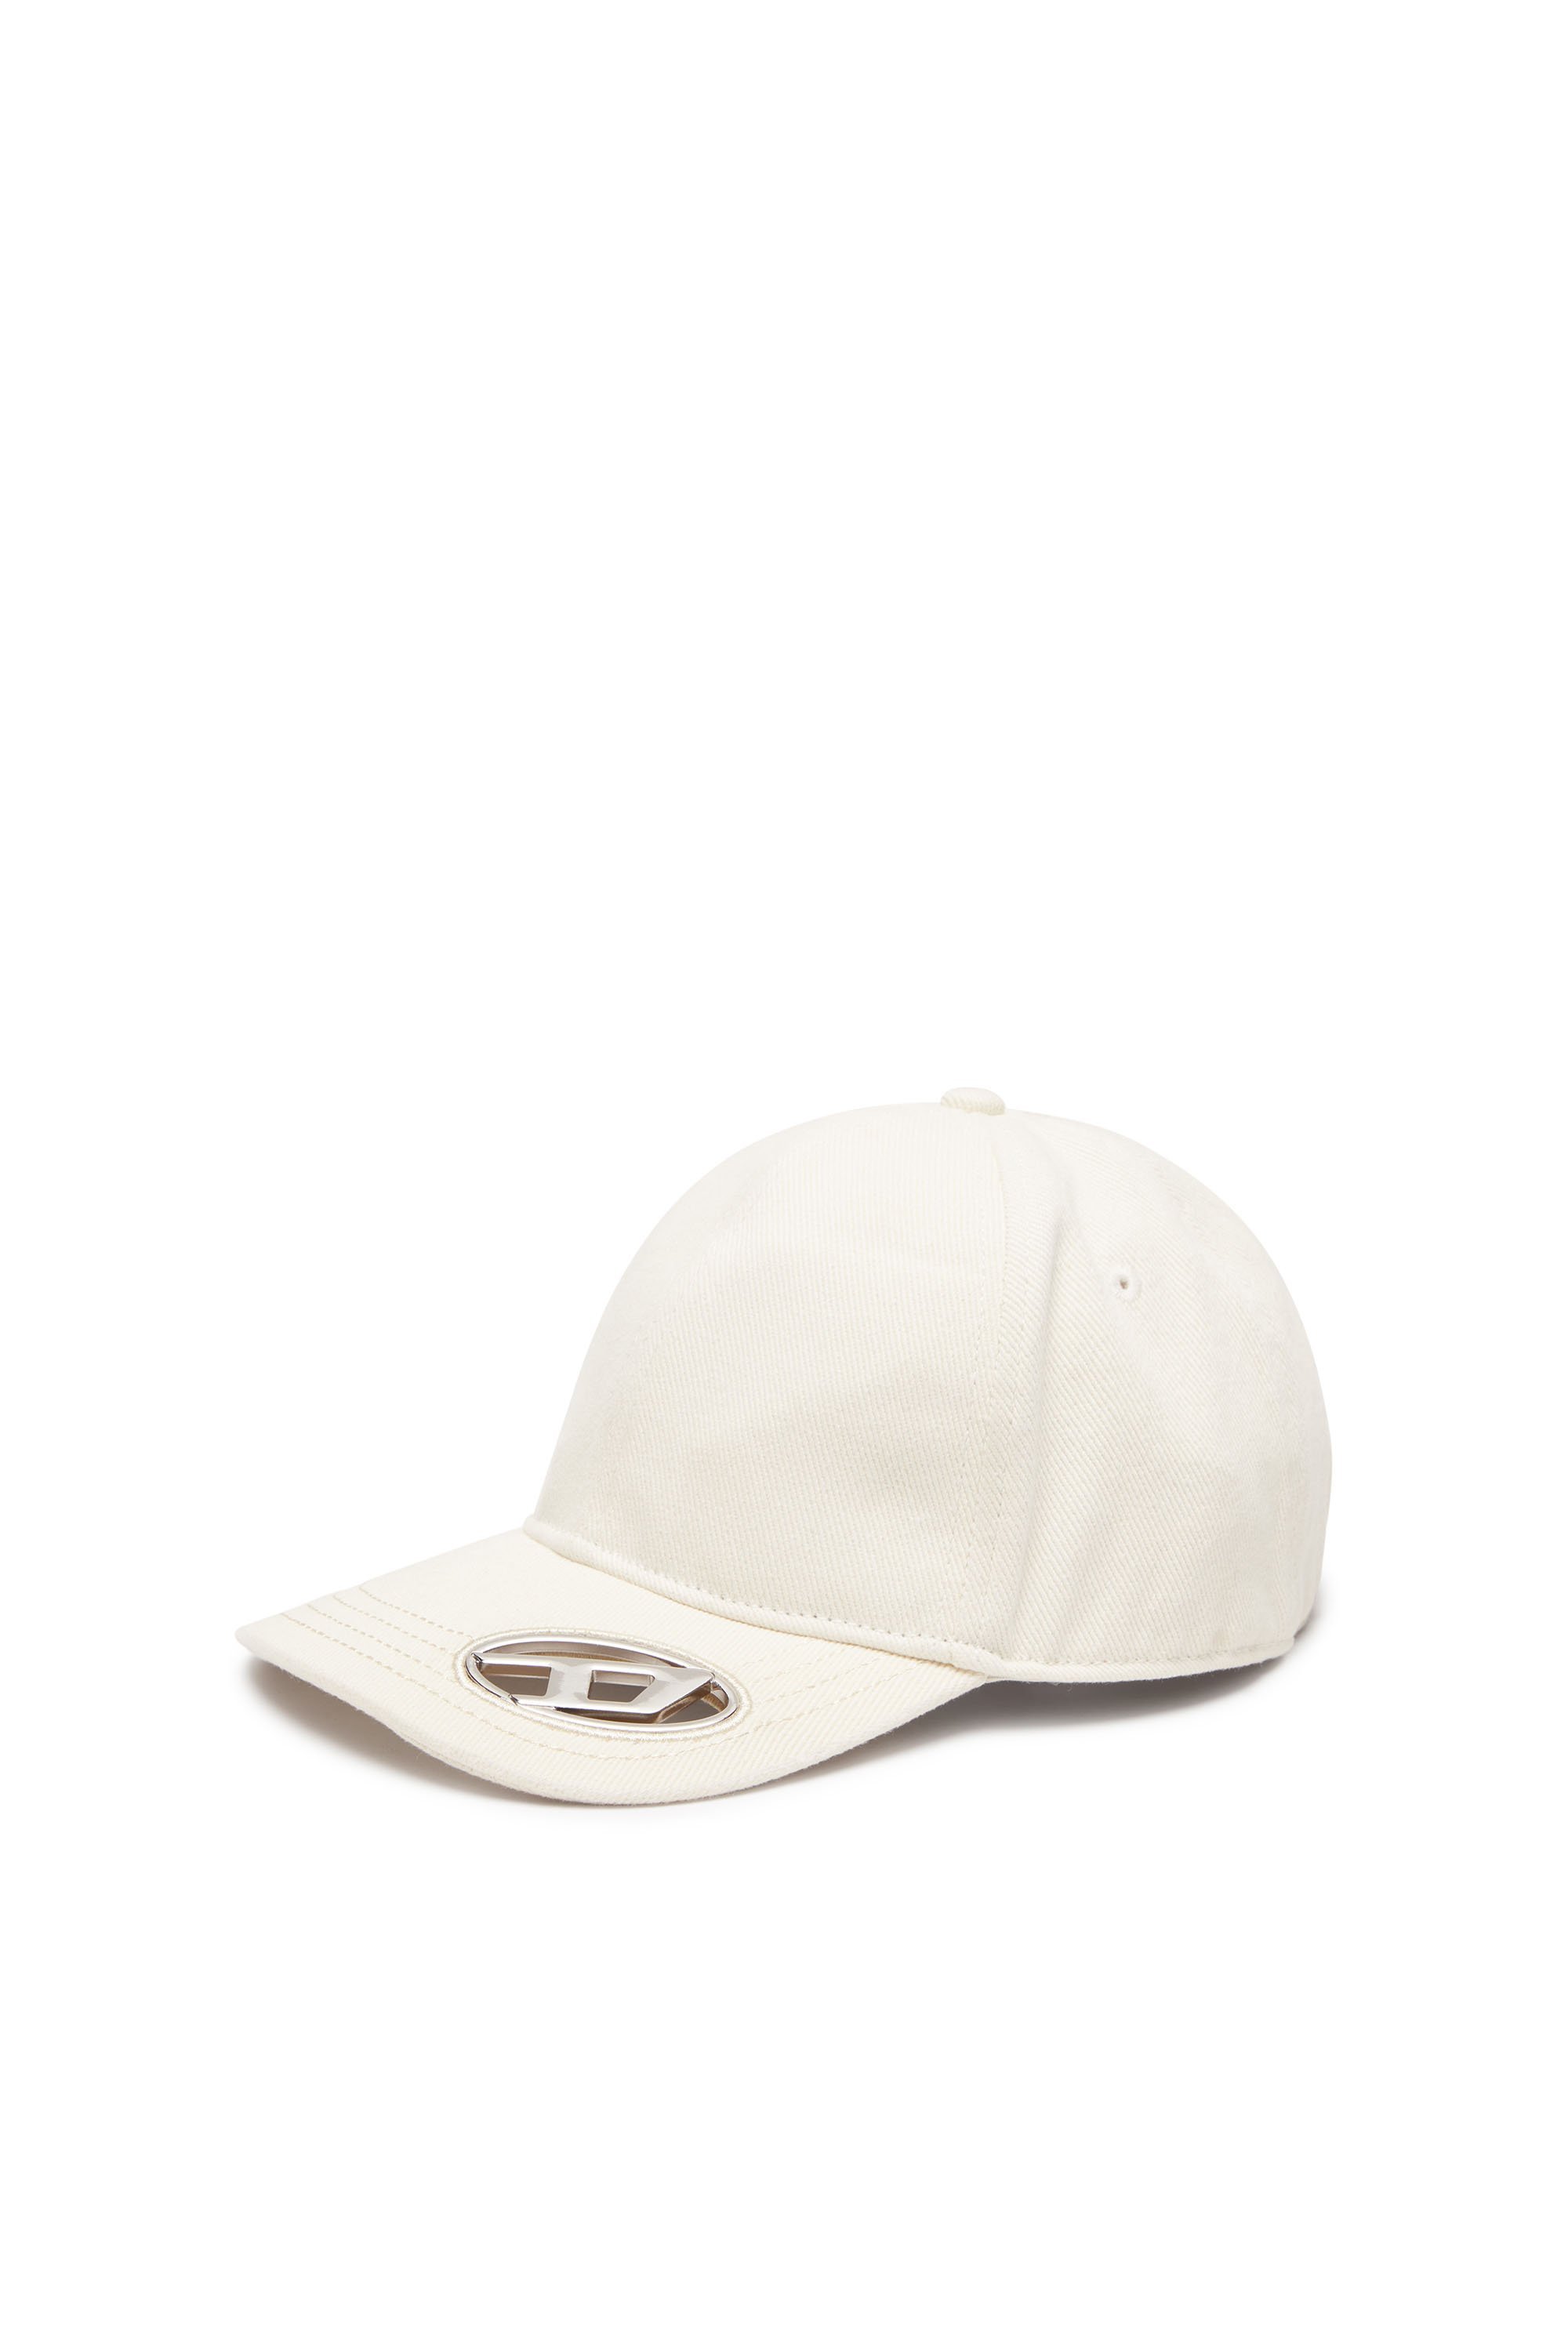 ディーゼル DIESEL メンズ キャップ ロゴ ディーゼル 帽子 キャップ ホワイト ブラック【送料無料】